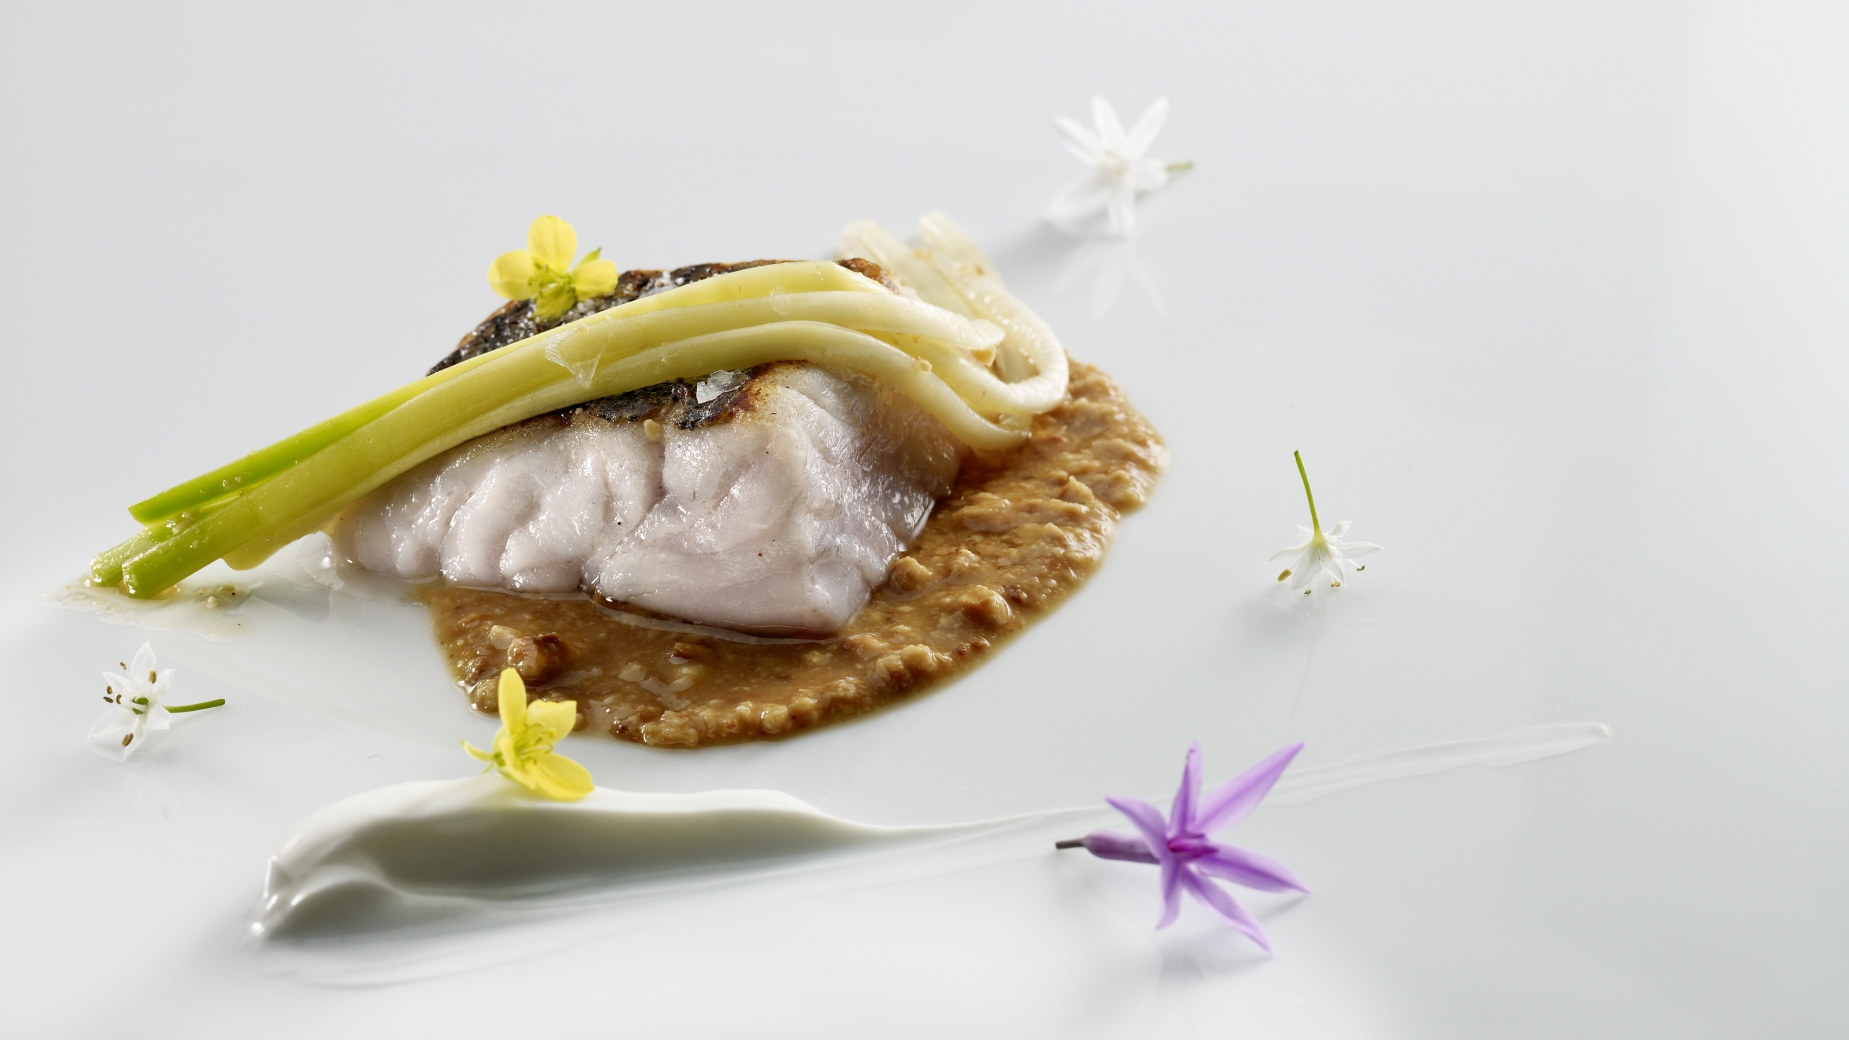 Hake fillet with baby garlic, hazelnut praline,  soured cream and purslane.
PHOTO: José Luis López de Zubiría / Mugaritz